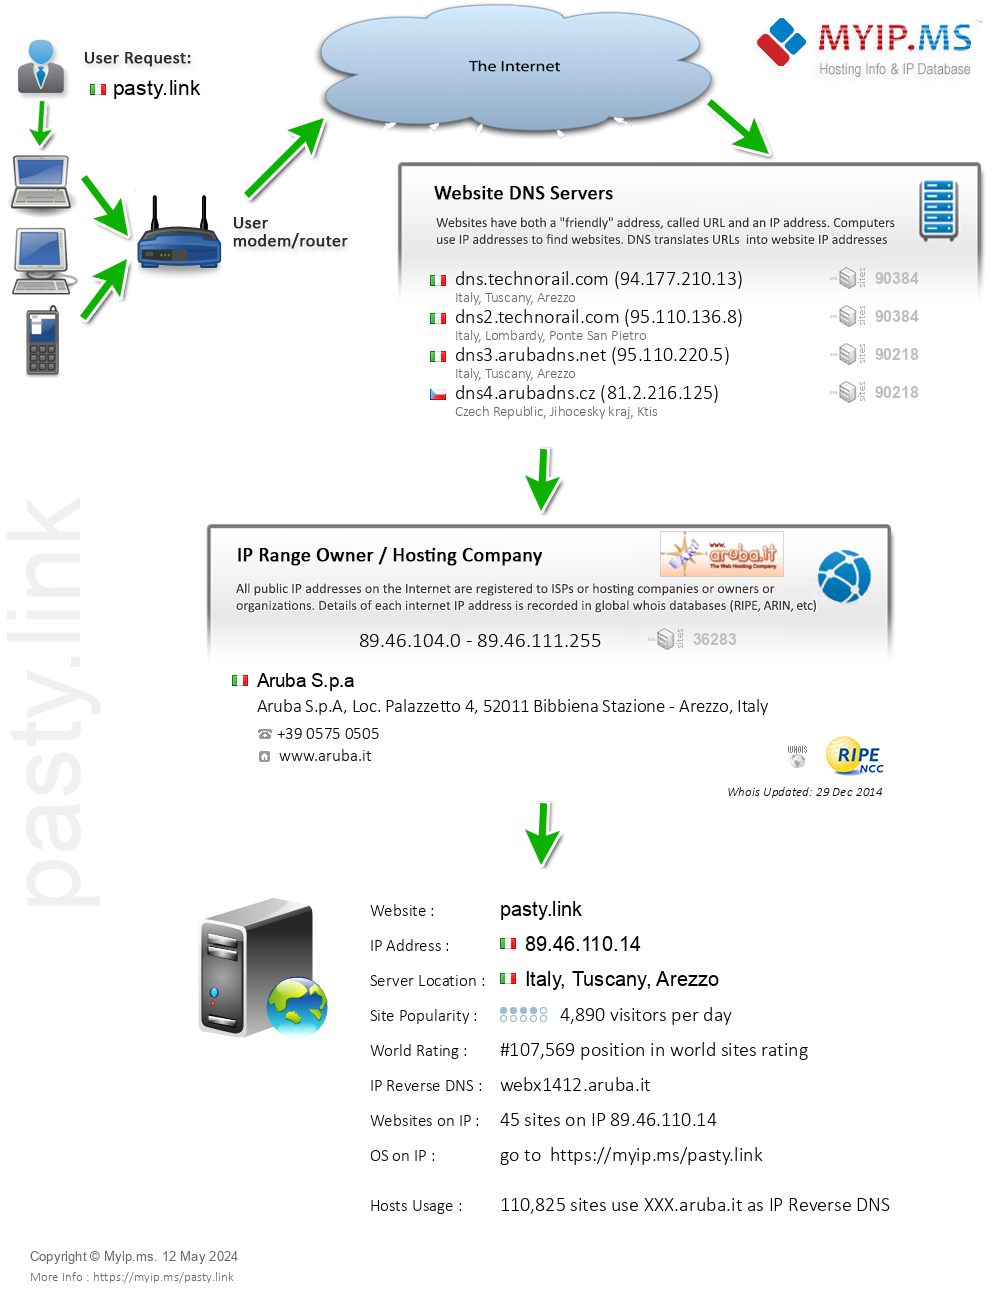 Pasty.link - Website Hosting Visual IP Diagram